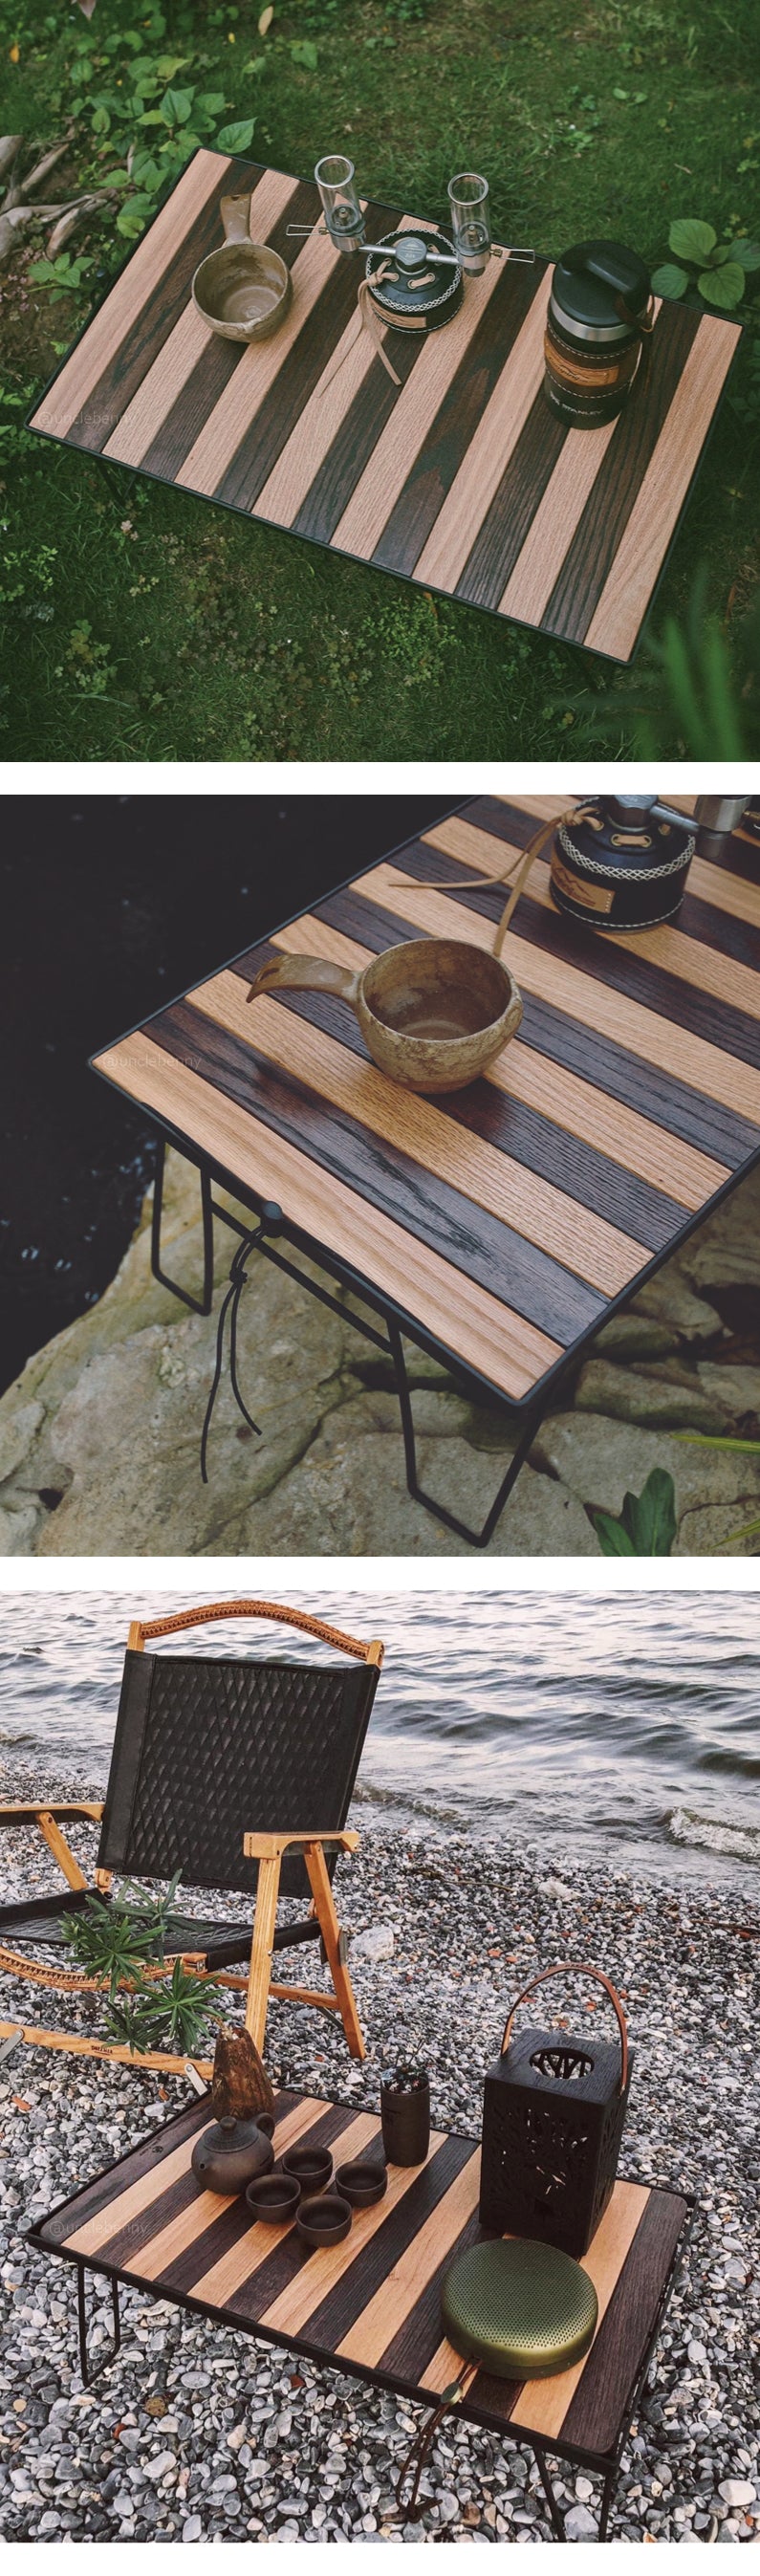 KIMI CAMP • KURU-KURU蛋捲桌板(三款: 原木色/深木色/雙木色) 附收納袋